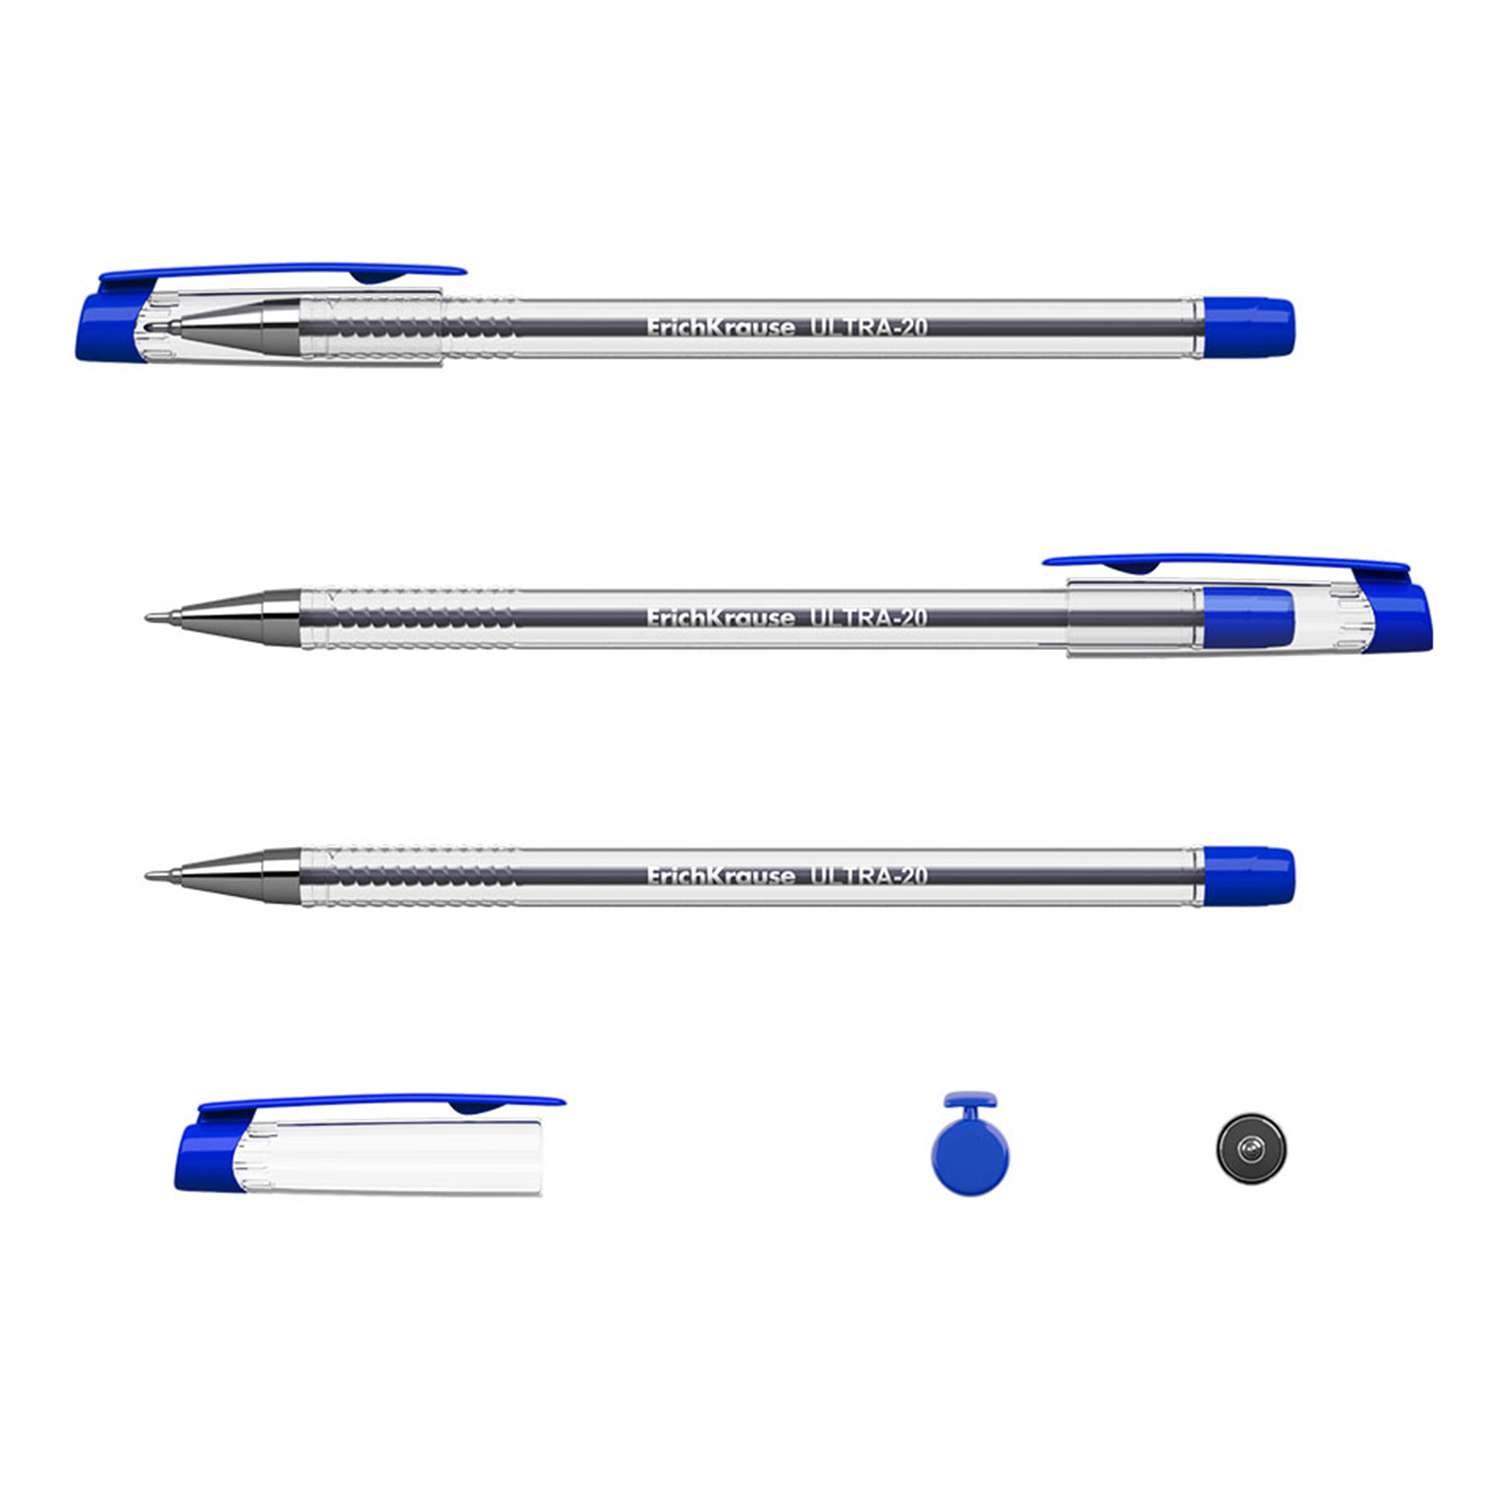 Ручка шариковая ErichKrause Ultra-20 цвет чернил синий в коробке по 12 шт - фото 2